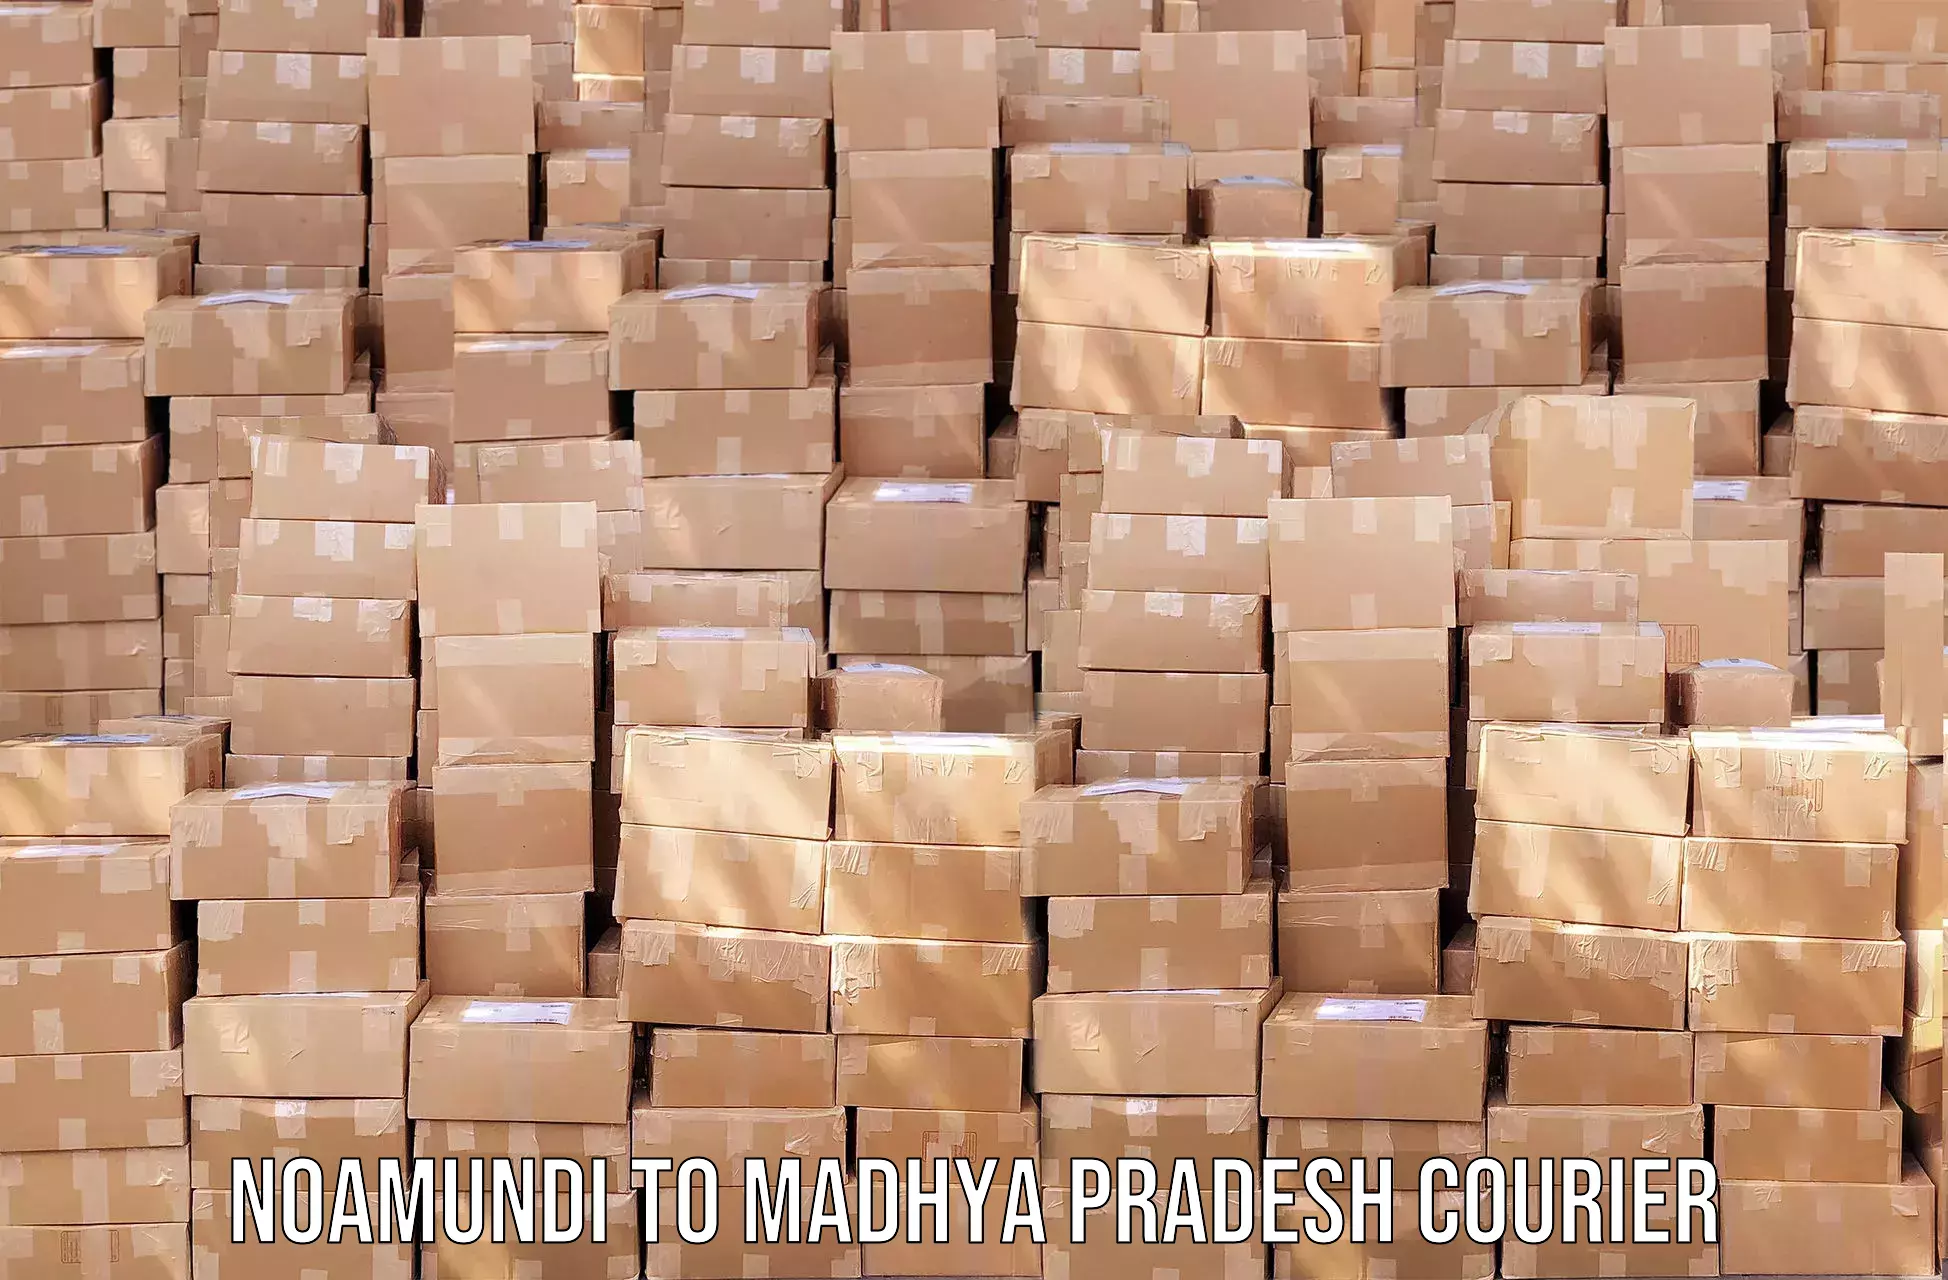 Dynamic courier operations Noamundi to Madhya Pradesh